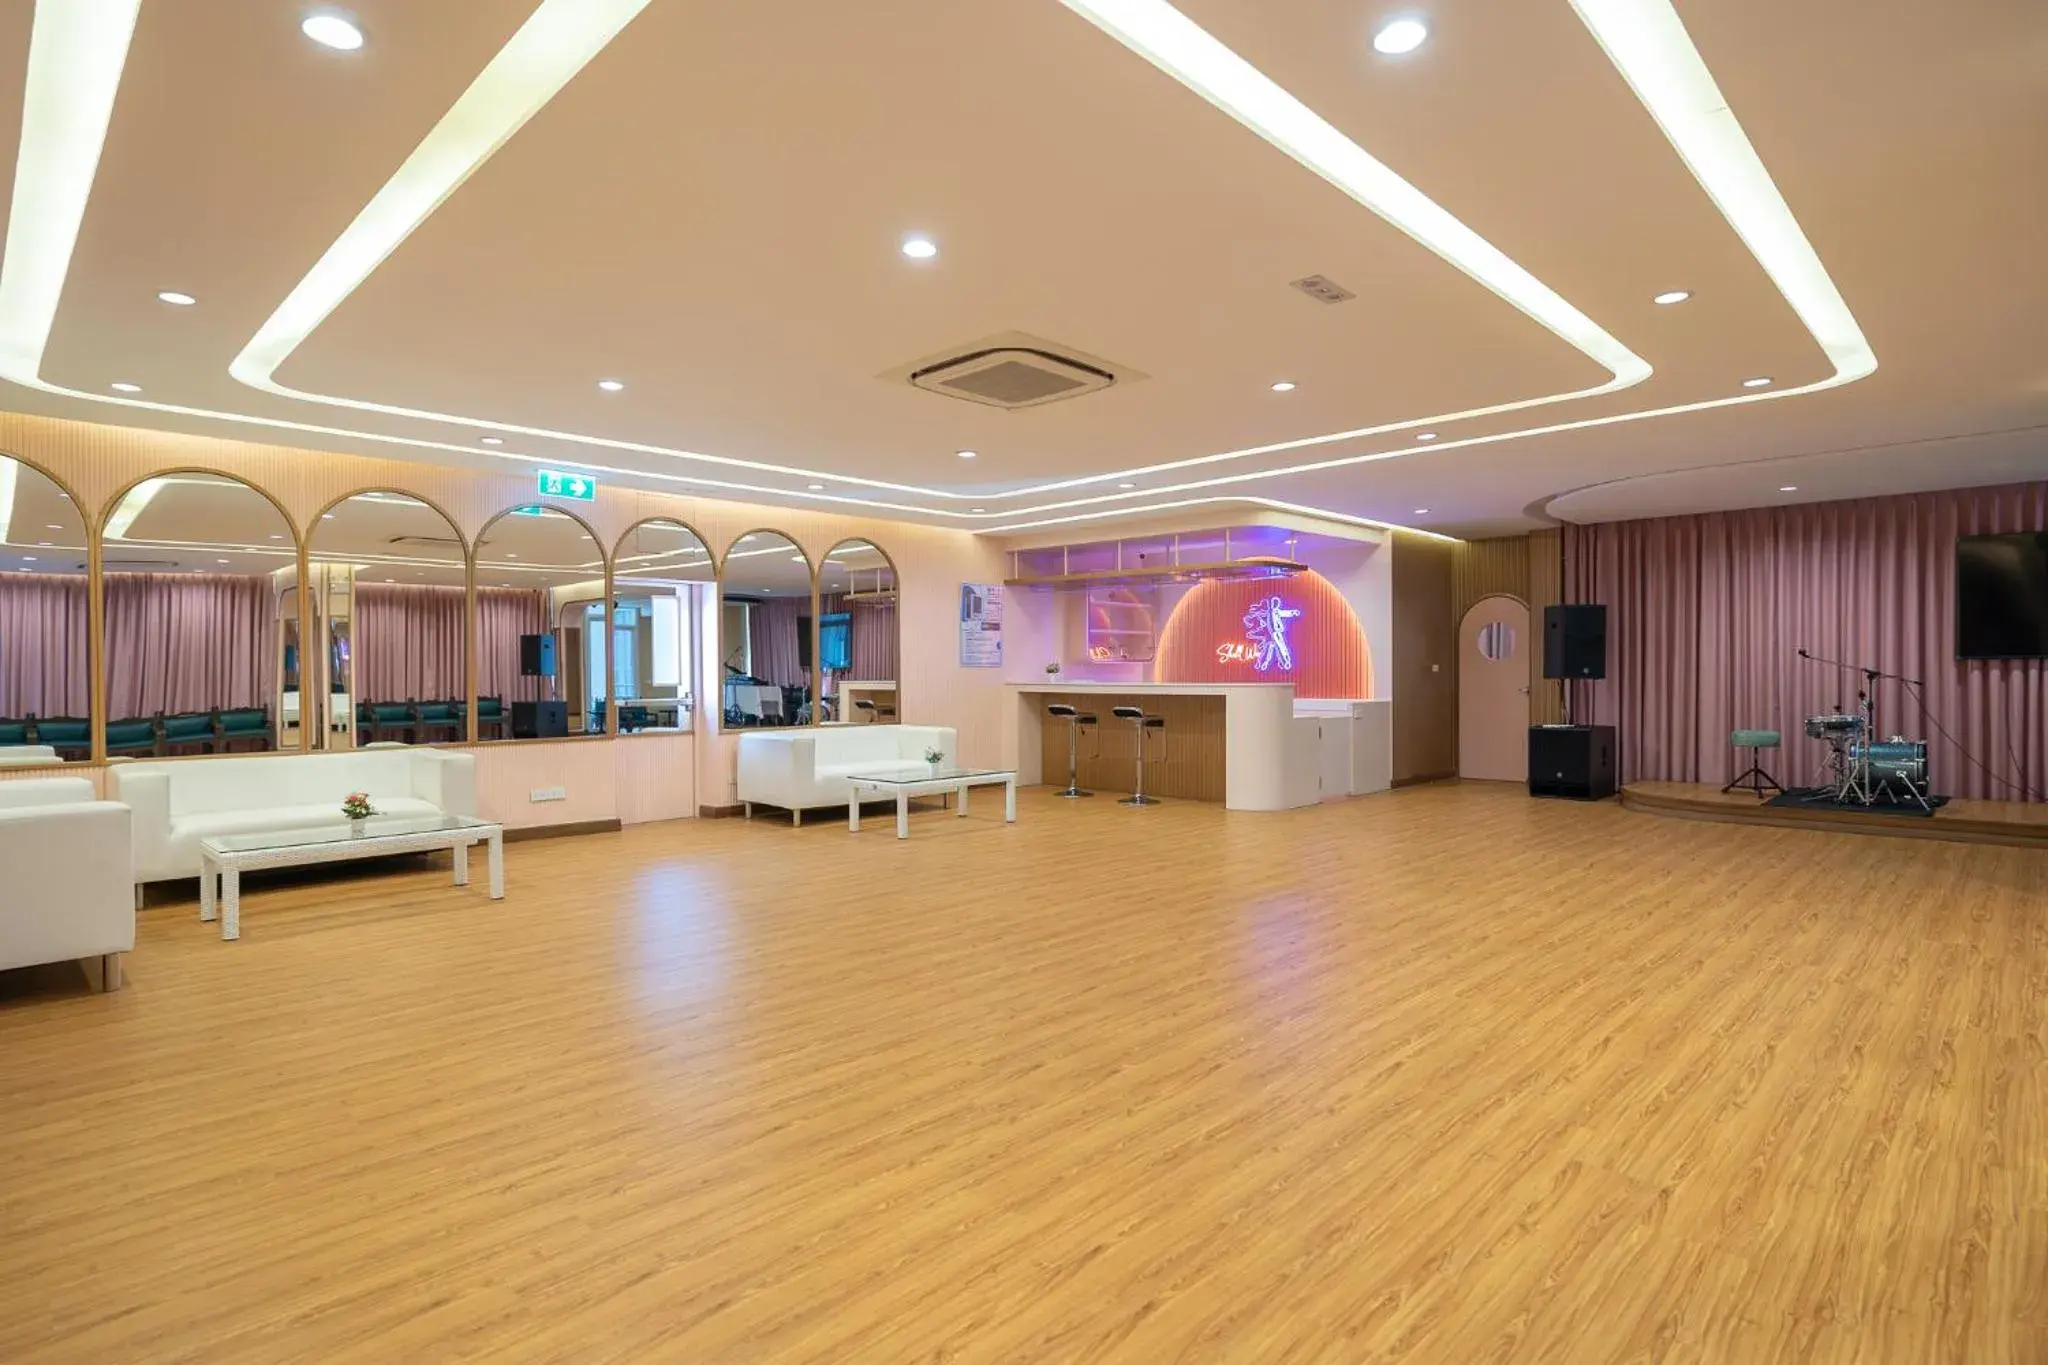 Banquet/Function facilities, Banquet Facilities in Bangkok Rama Hotel